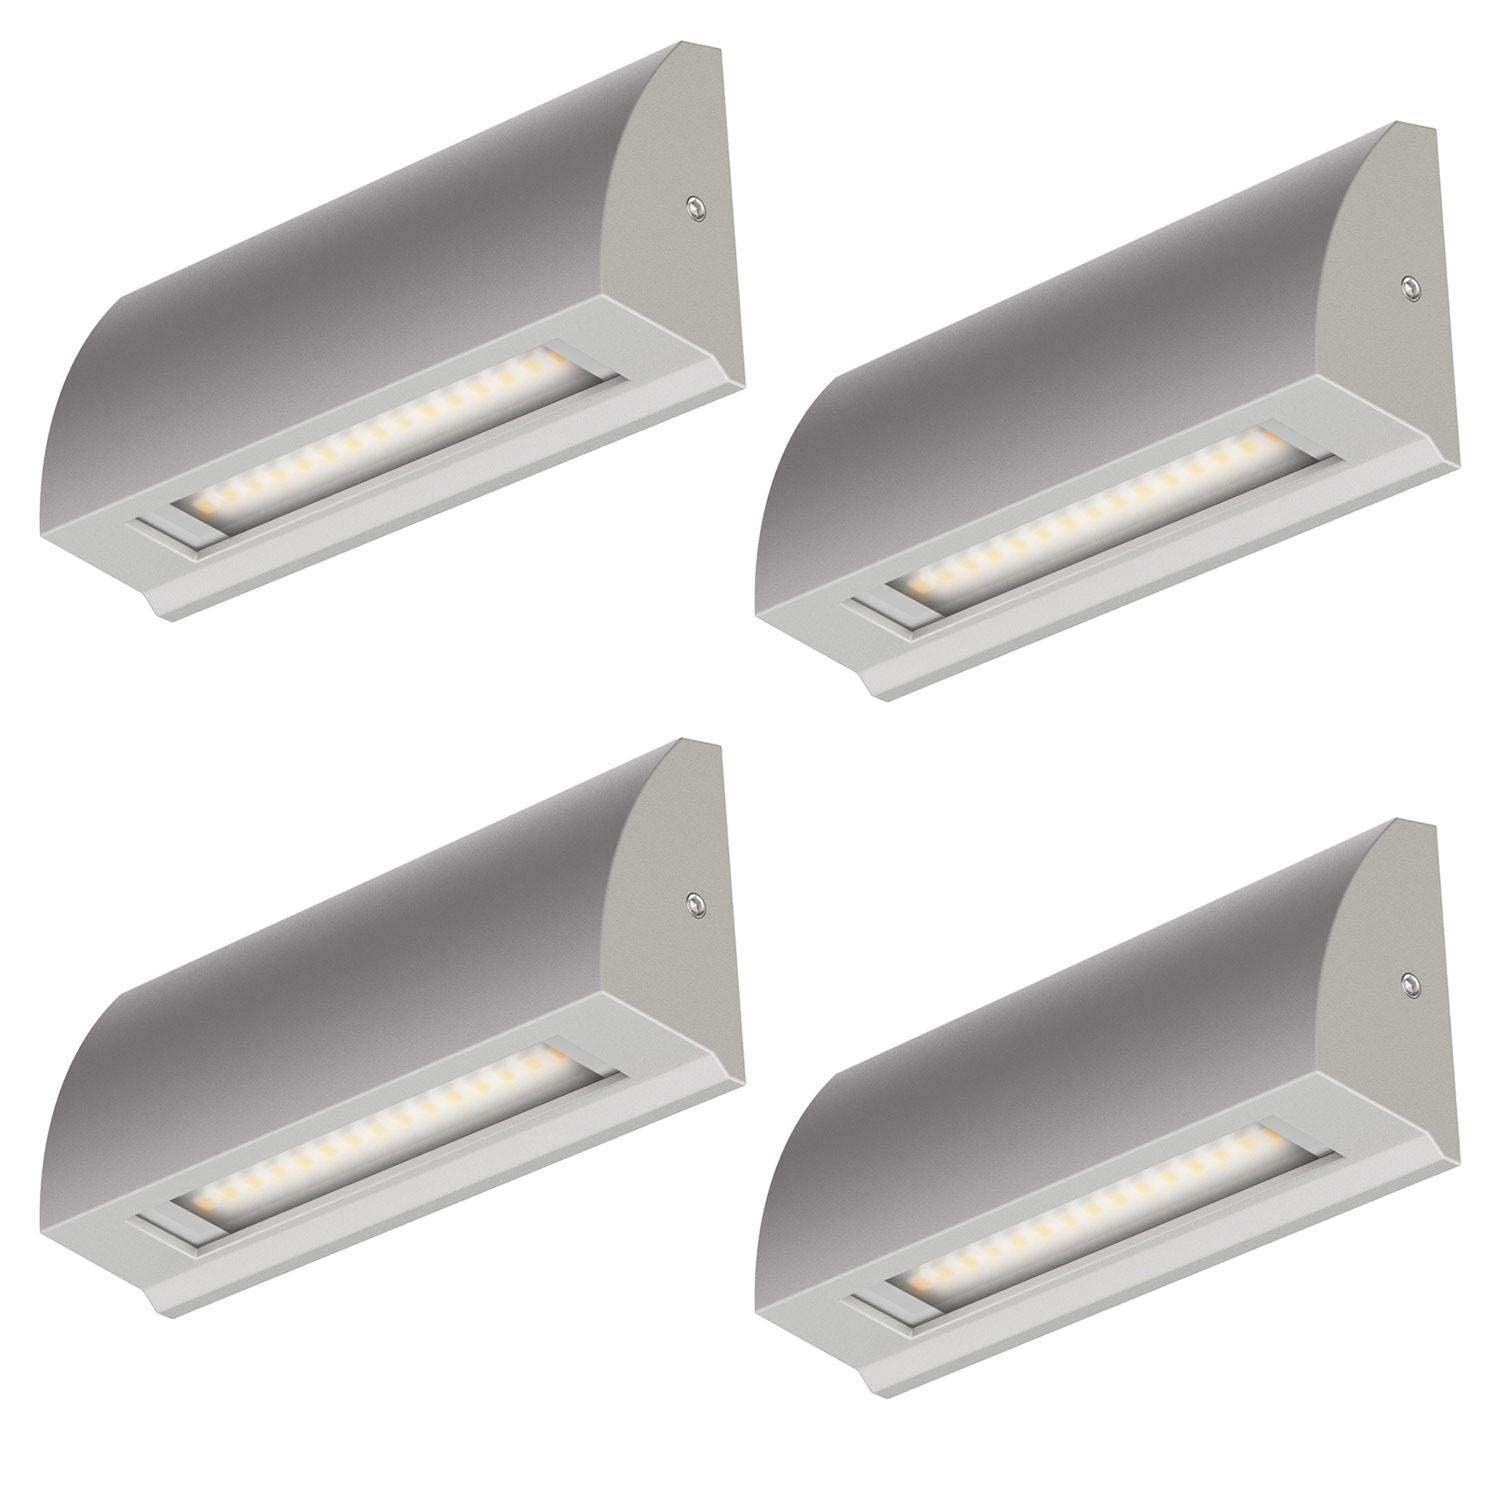 ledscom.de 4 Stück LED Wandleuchte/Treppenlicht SEGIN für außen, IP54, flach, Downlight, grau matt, eckig, 3,8 W, 265lm, warmweiß